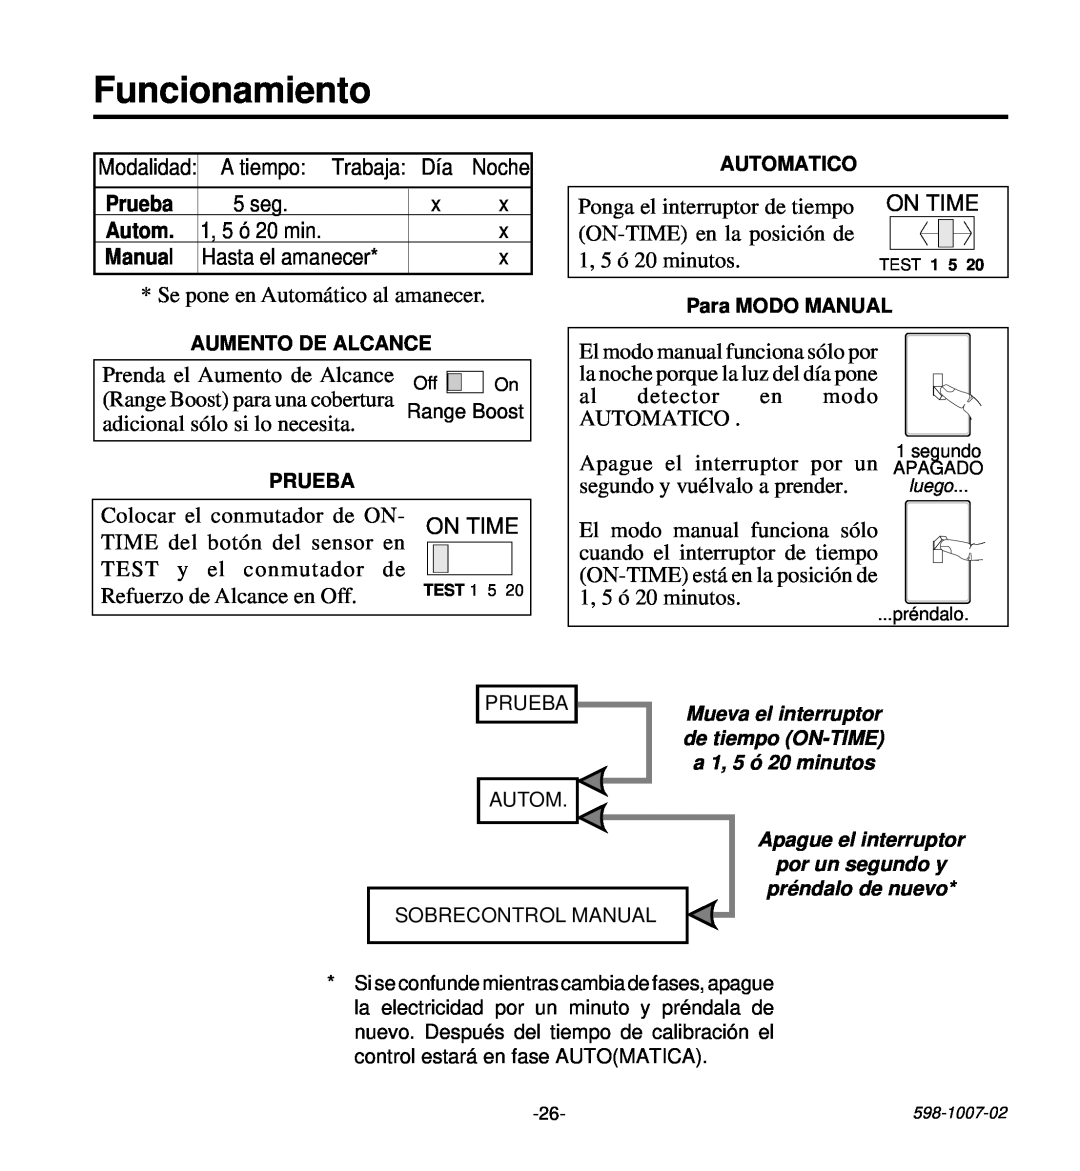 Desa HD-9260 manual Funcionamiento, Prueba, Autom, Manual 